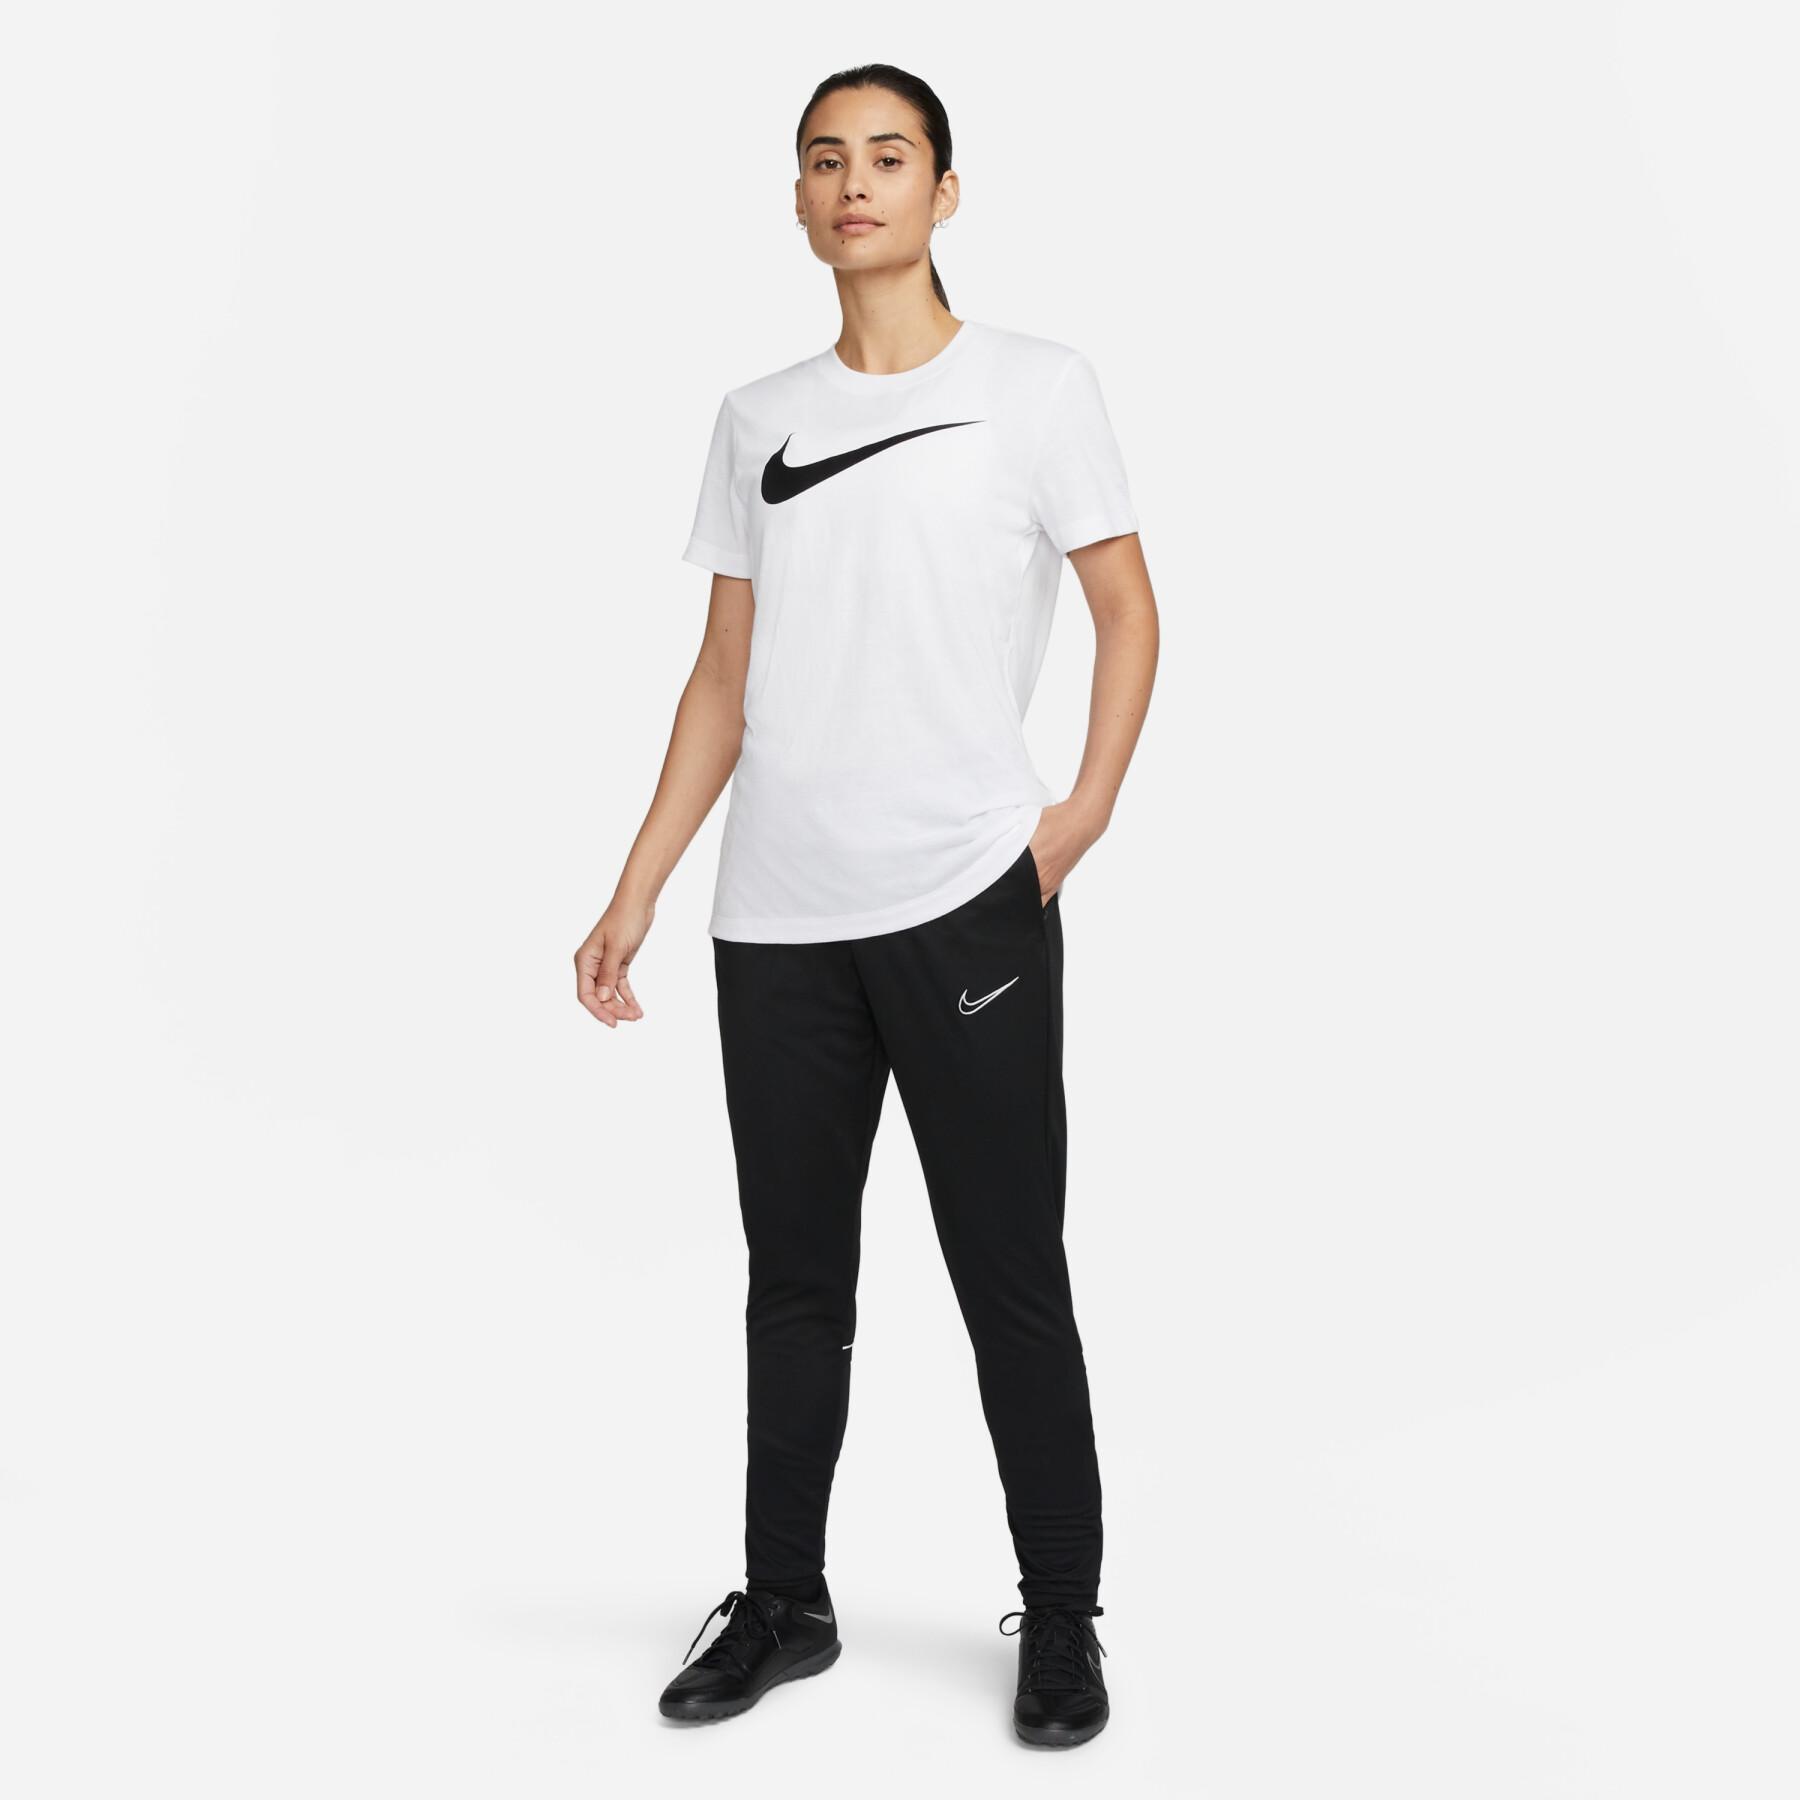 Dames-T-shirt Nike Fit Park20